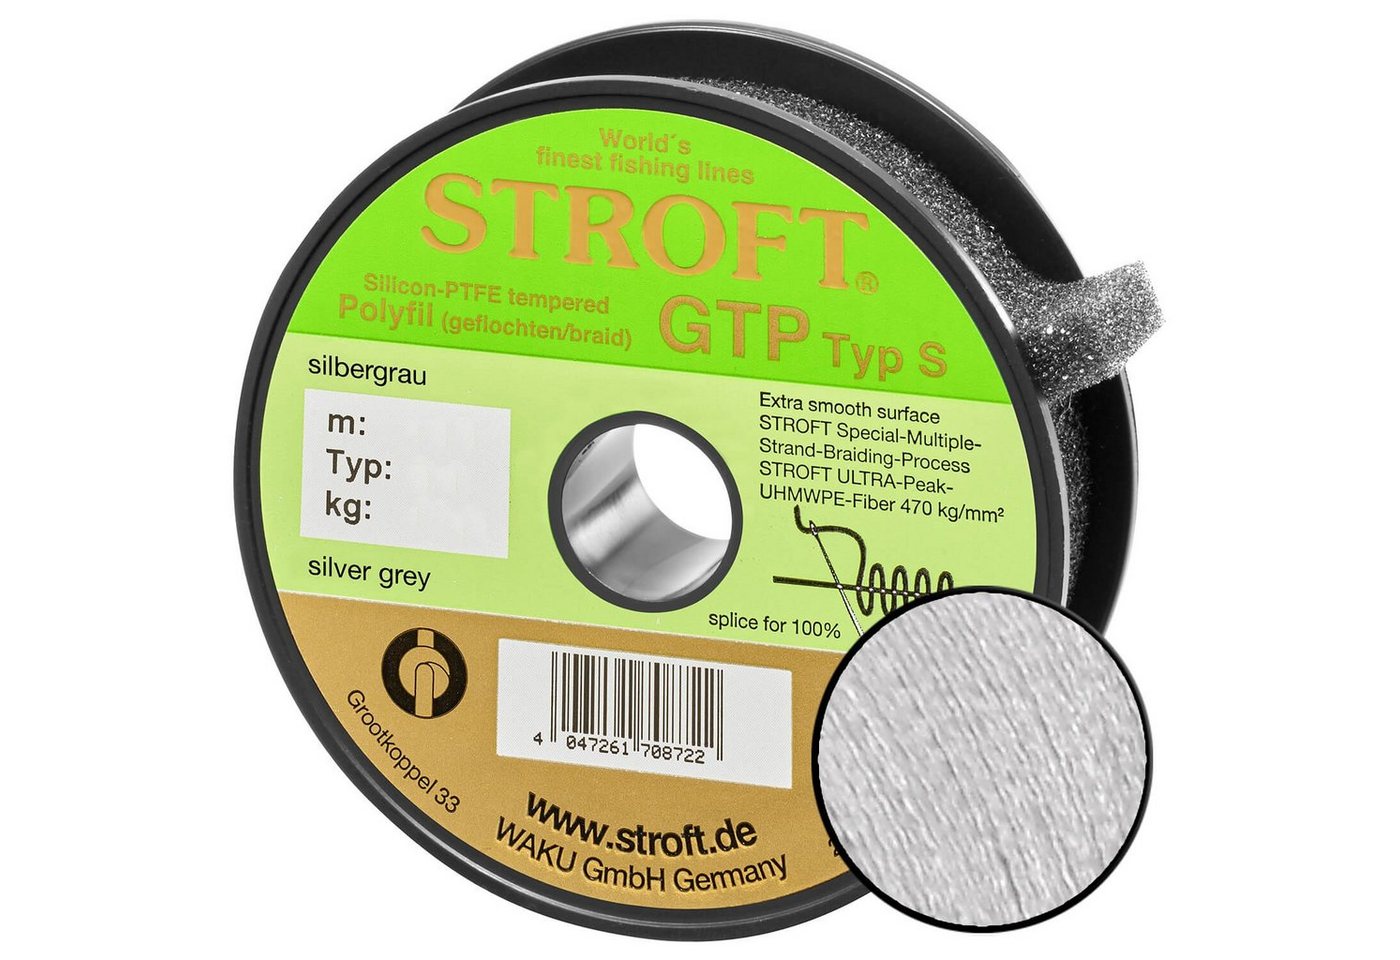 Stroft Angelschnur Schnur STROFT GTP Typ S Geflochtene 200m Silbergrau, 200 m Länge, 0.25 mm Fadendurchmesser, (1-St), 13.0kg Tragkraft von Stroft